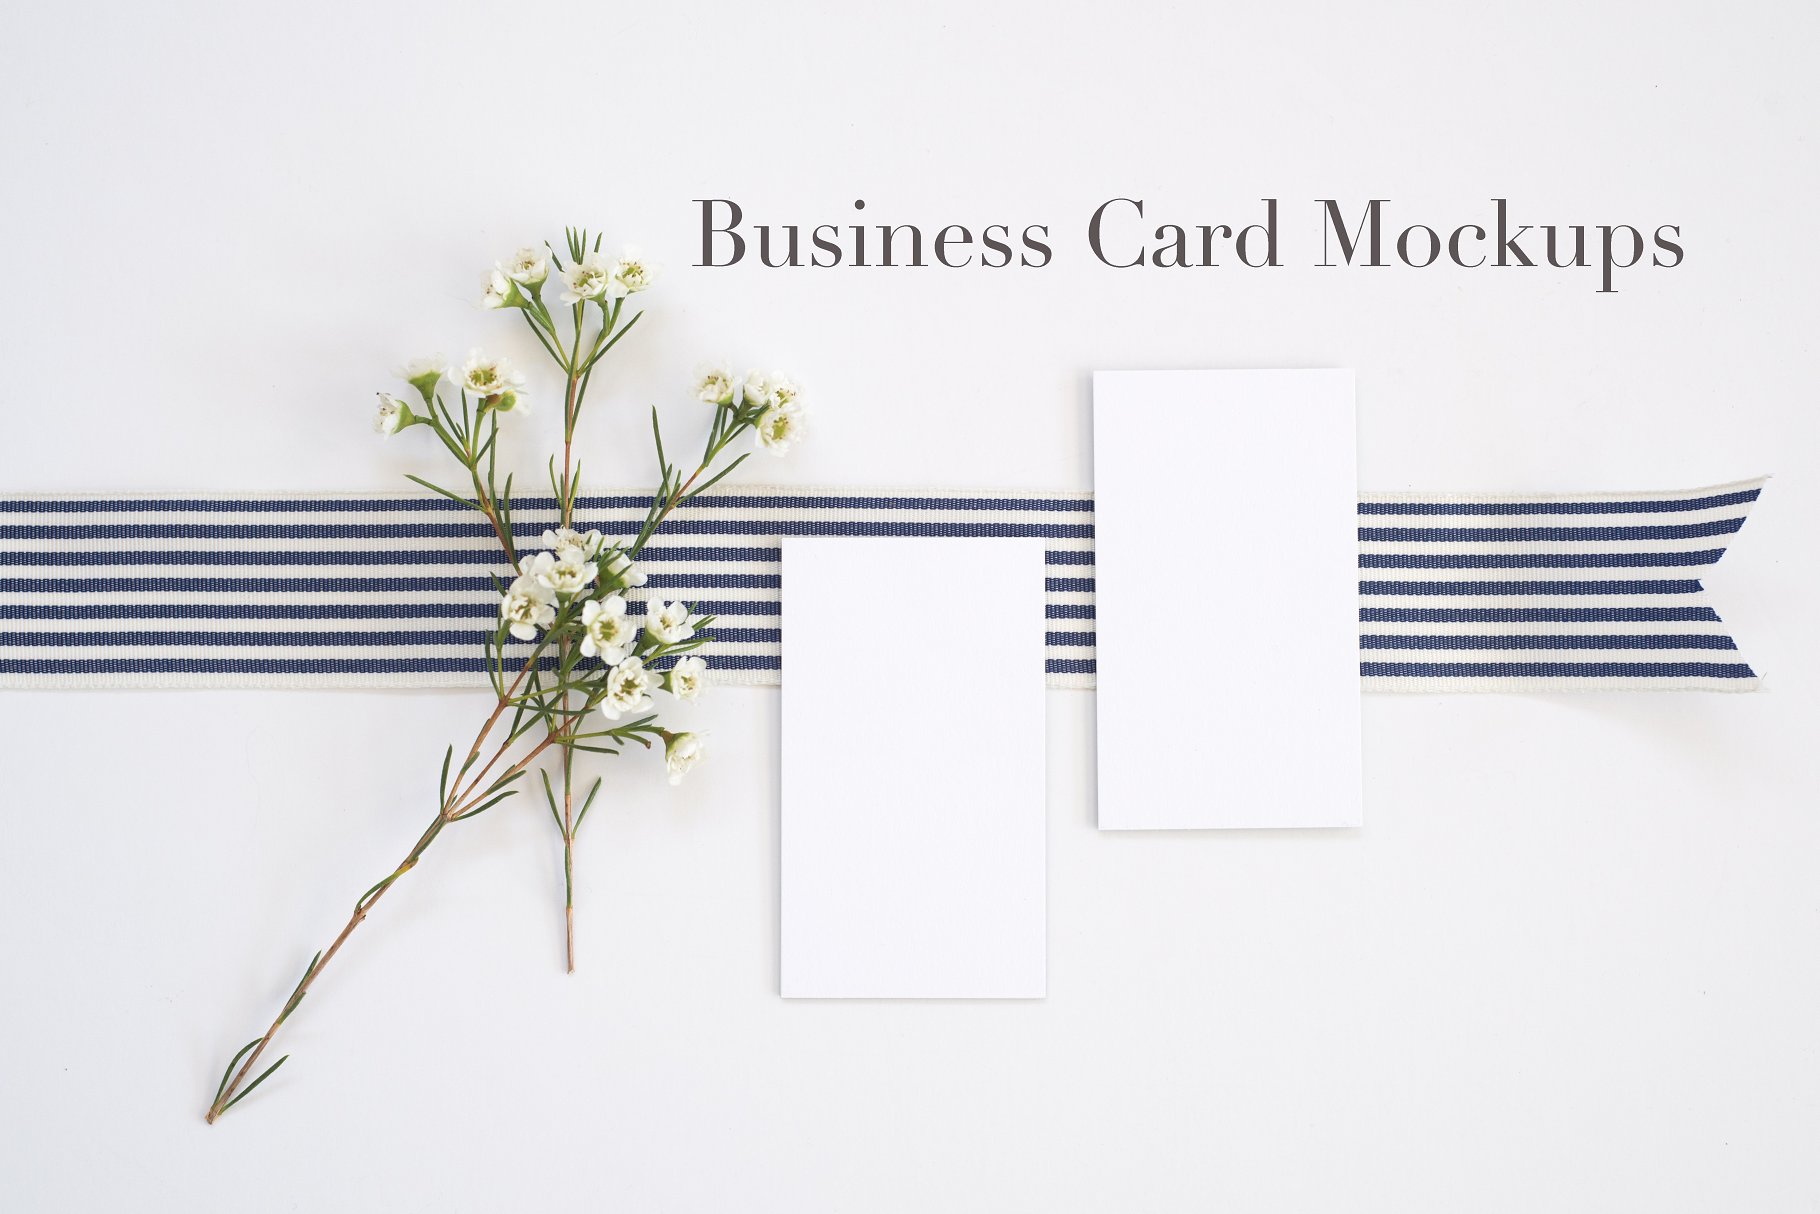 时尚简约企业名片展示样机 Styled Stock | Business Card Mockups插图